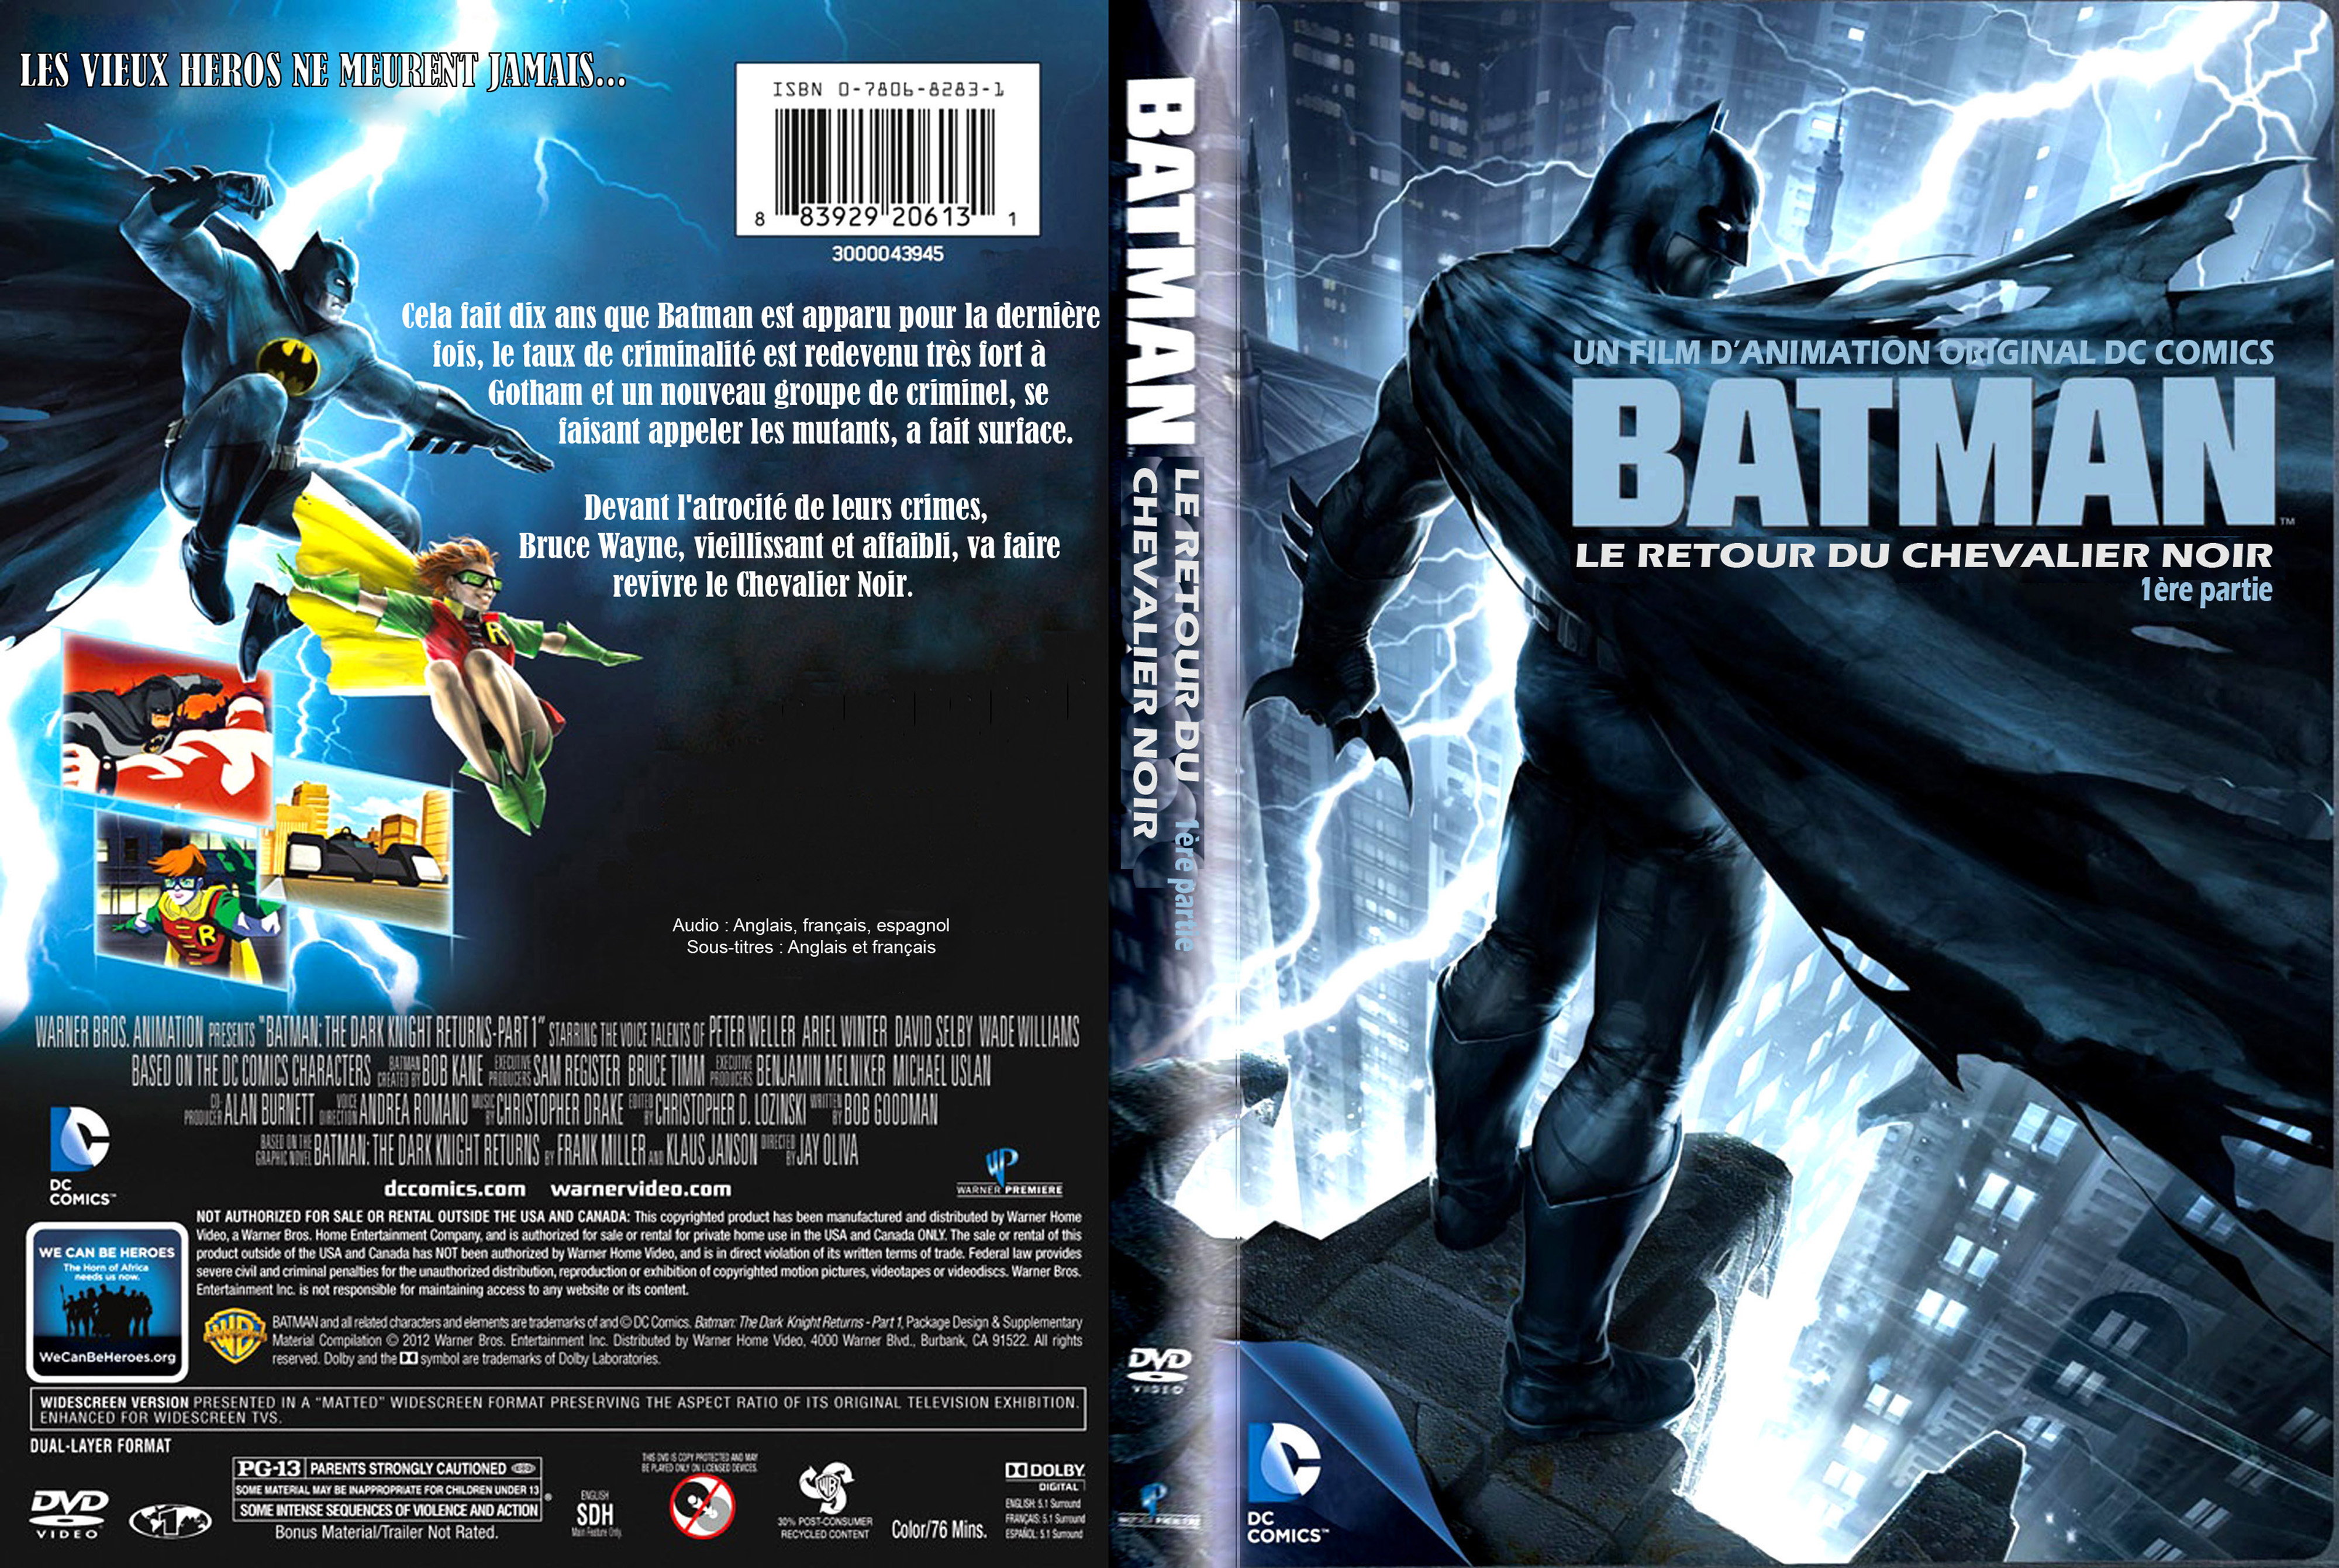 Jaquette DVD Batman Le retour du chevalier noir partie 1 custom